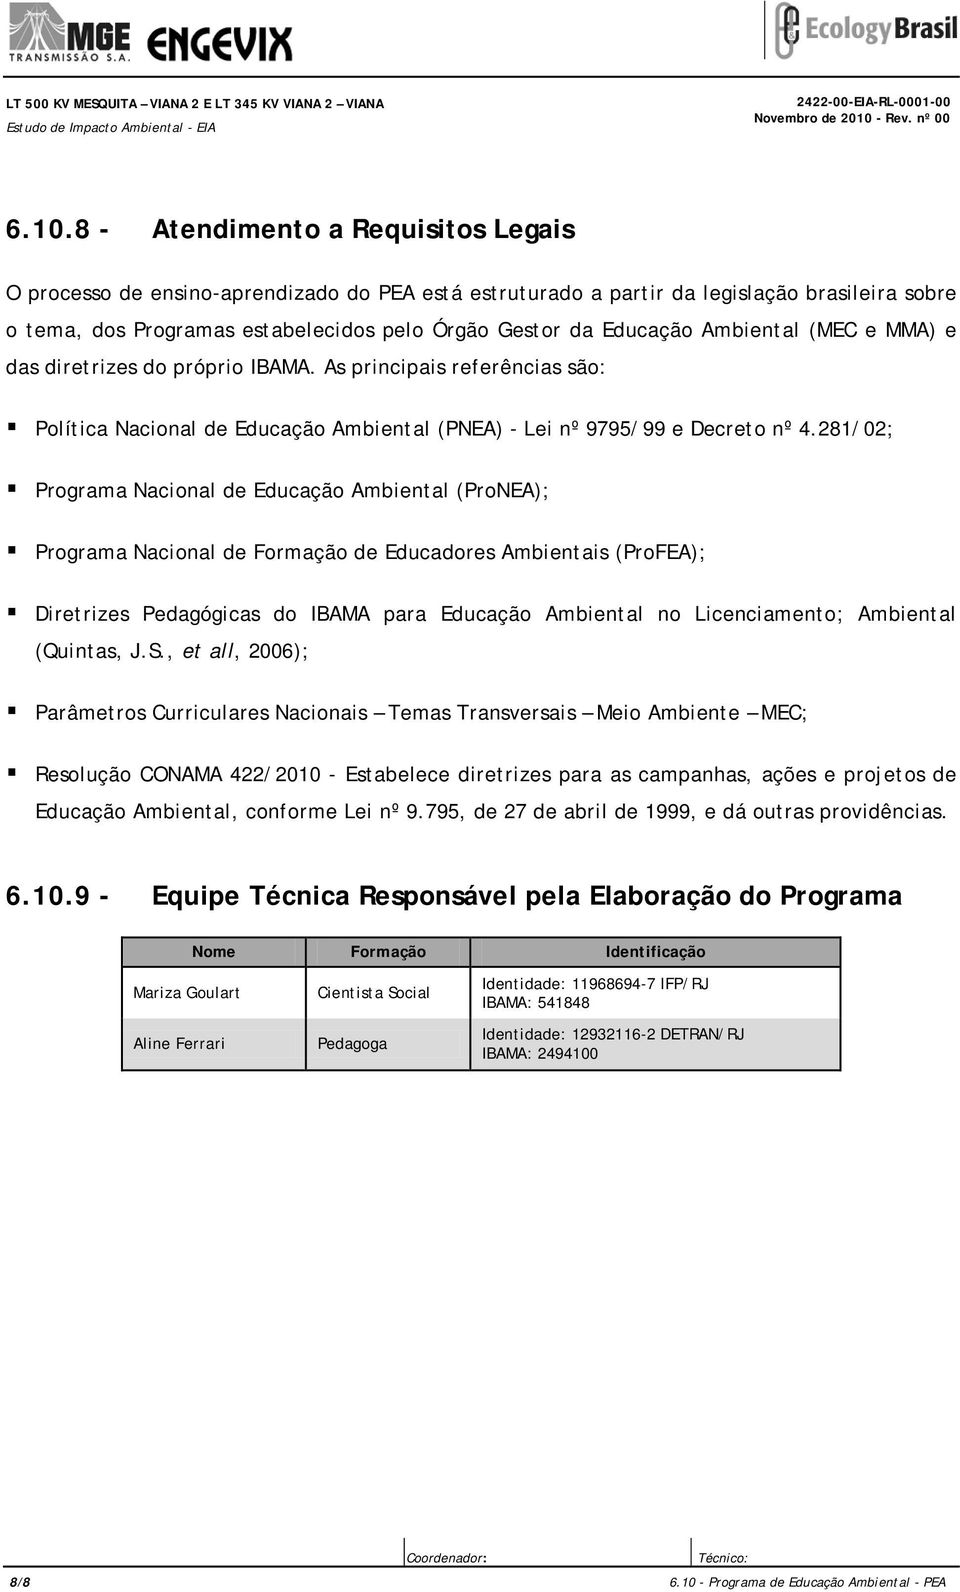 8 - Atendimento a Requisitos Legais O processo de ensino-aprendizado do PEA está estruturado a partir da legislação brasileira sobre o tema, dos Programas estabelecidos pelo Órgão Gestor da Educação